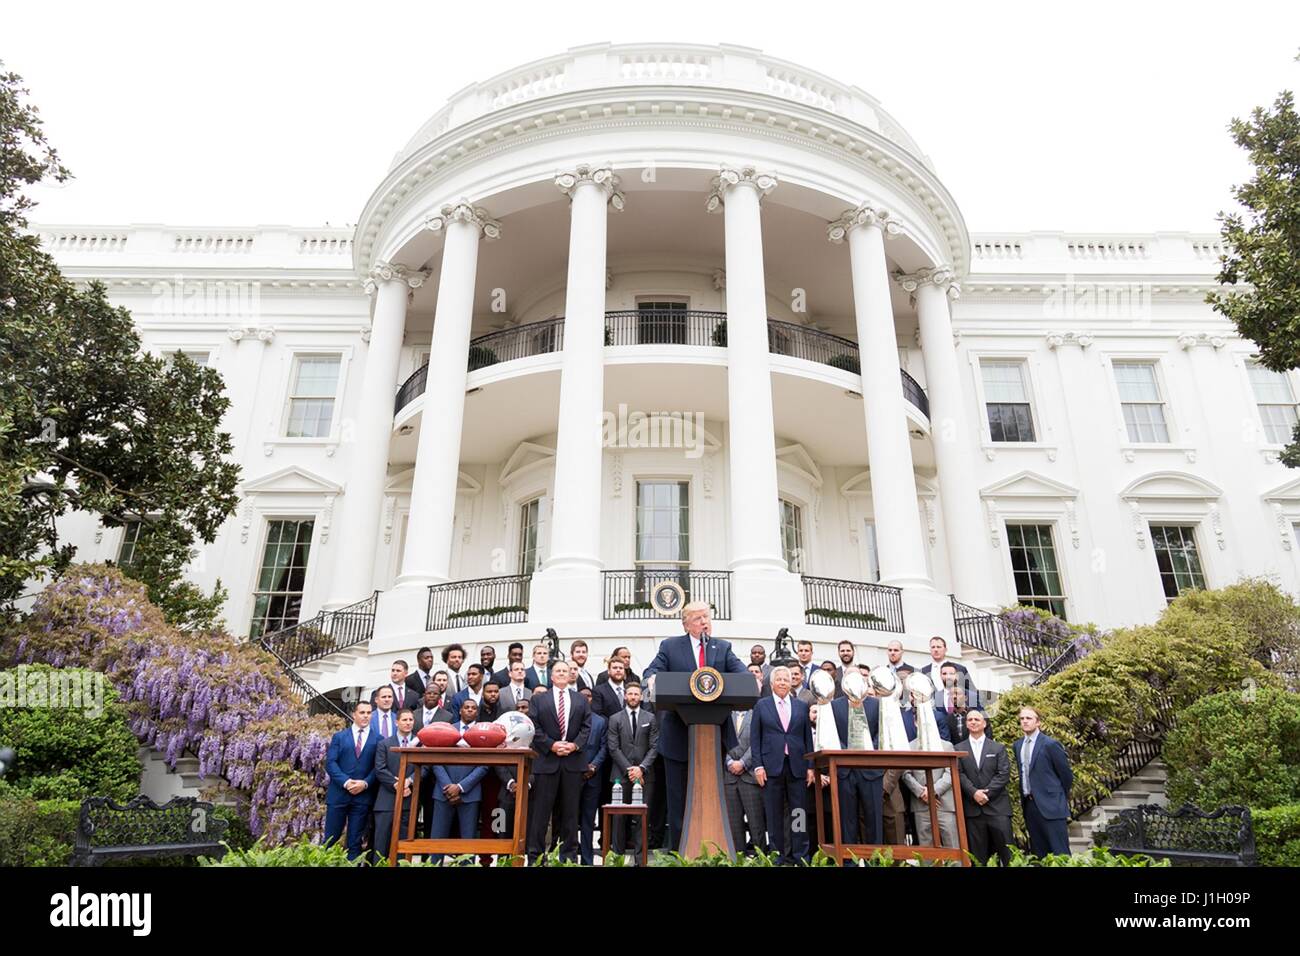 US-Präsident Donald Trump gratuliert die New England Patriots Super Bowl Gewinner NFL Fußball-Nationalmannschaft auf South Lawn des weißen Hauses 19. April 2017 in Washington, D.C. Stockfoto